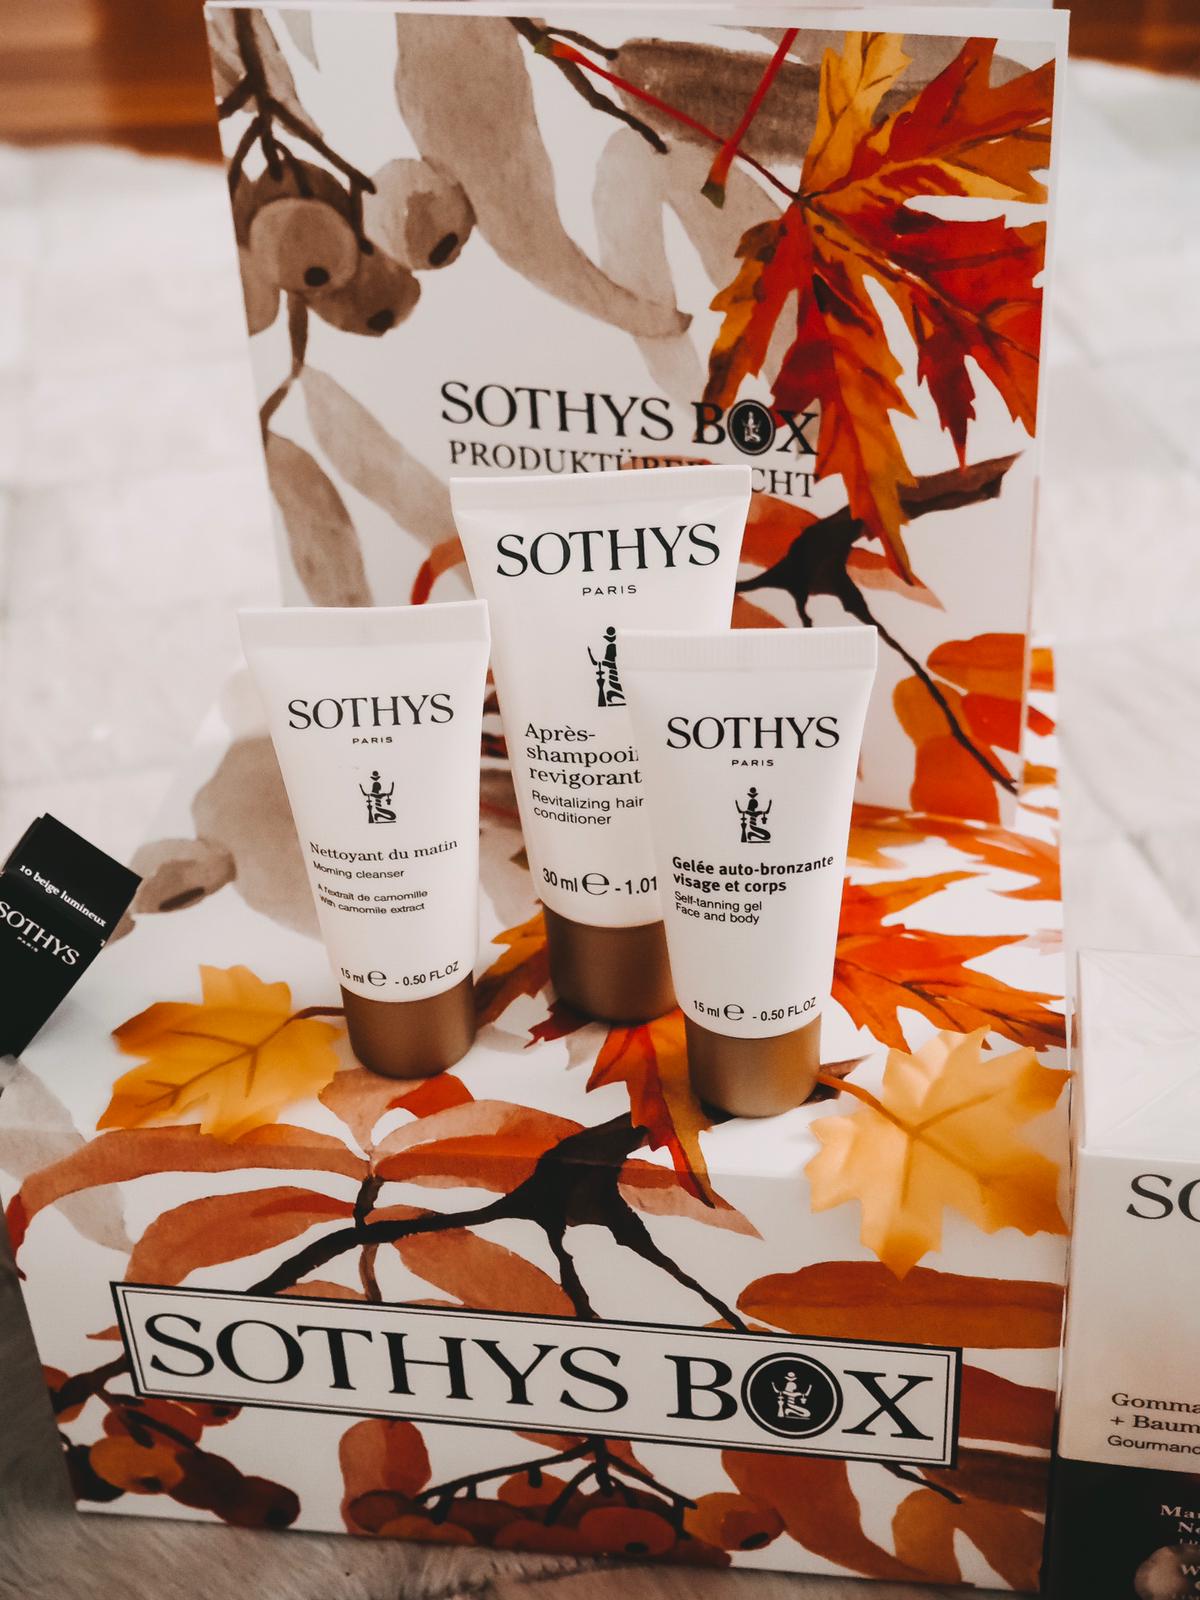 Heute zeige ich auf dem Blog die aktuelle Sothys Box Herbst Edition 2019 mit 7 top Produkten. Außerdem habe ich einen Rabattcode für euch mit satten 5 Euro.